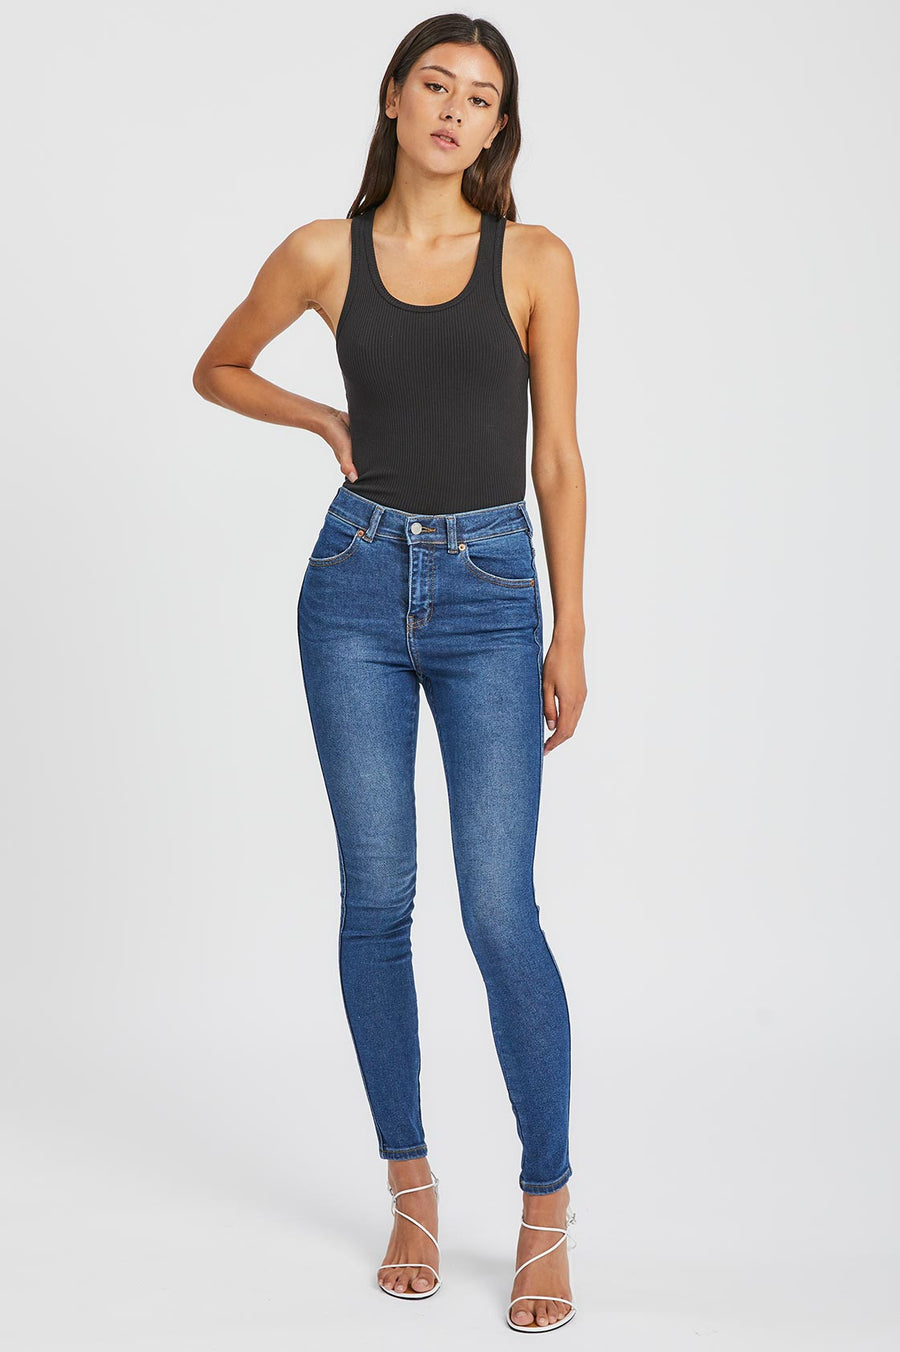 Lexy Jeans Westcoast Dark Blue - Dr Denim Jeans - Australia & NZ